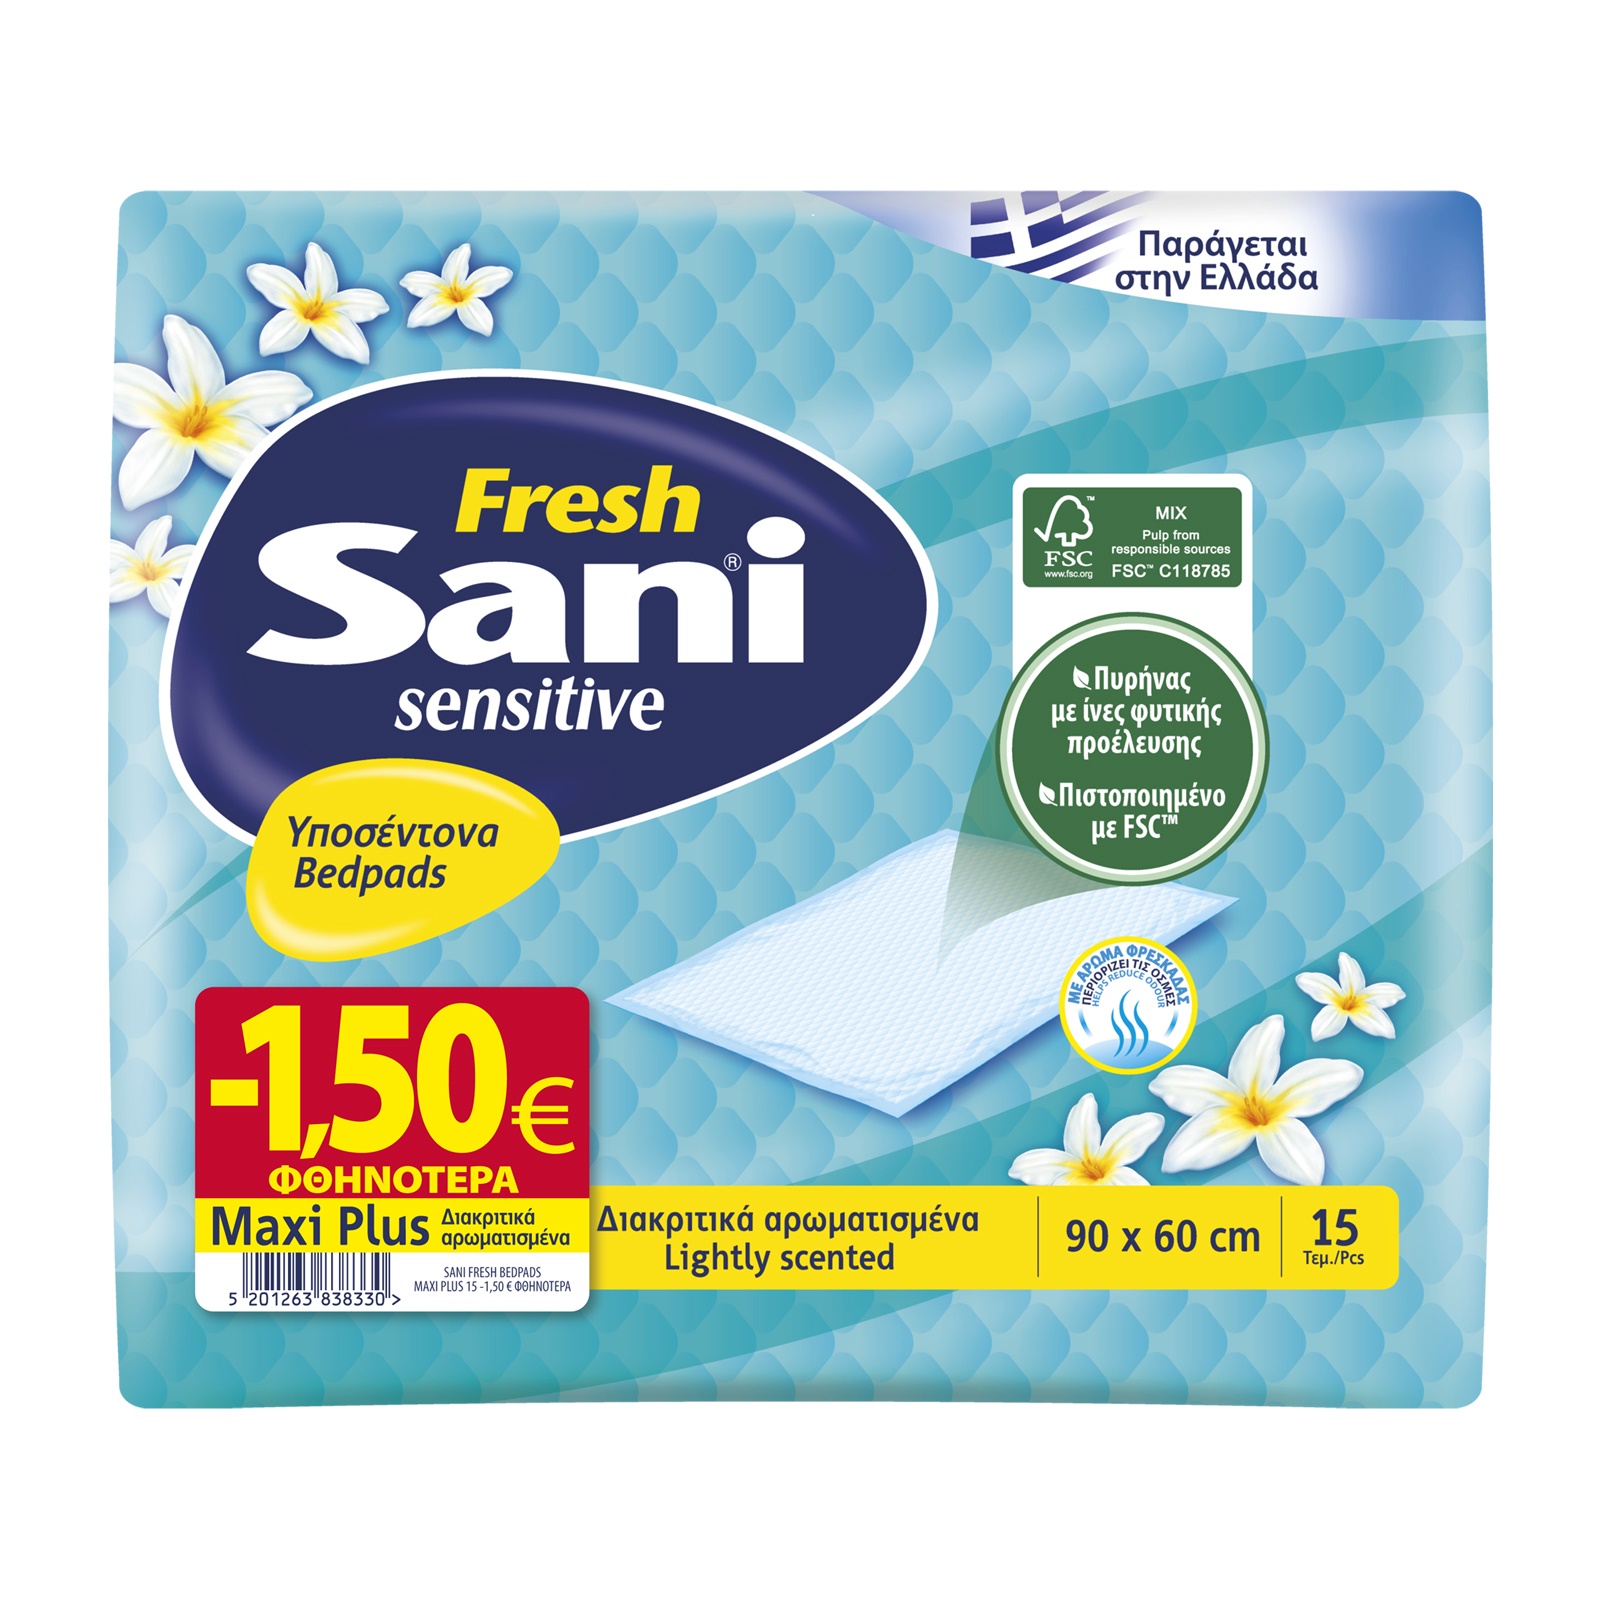 Υποσέντονα ακράτειας Sani Sensitive Fresh Maxi Plus (15 τεμ) -1,50€ 4300008231